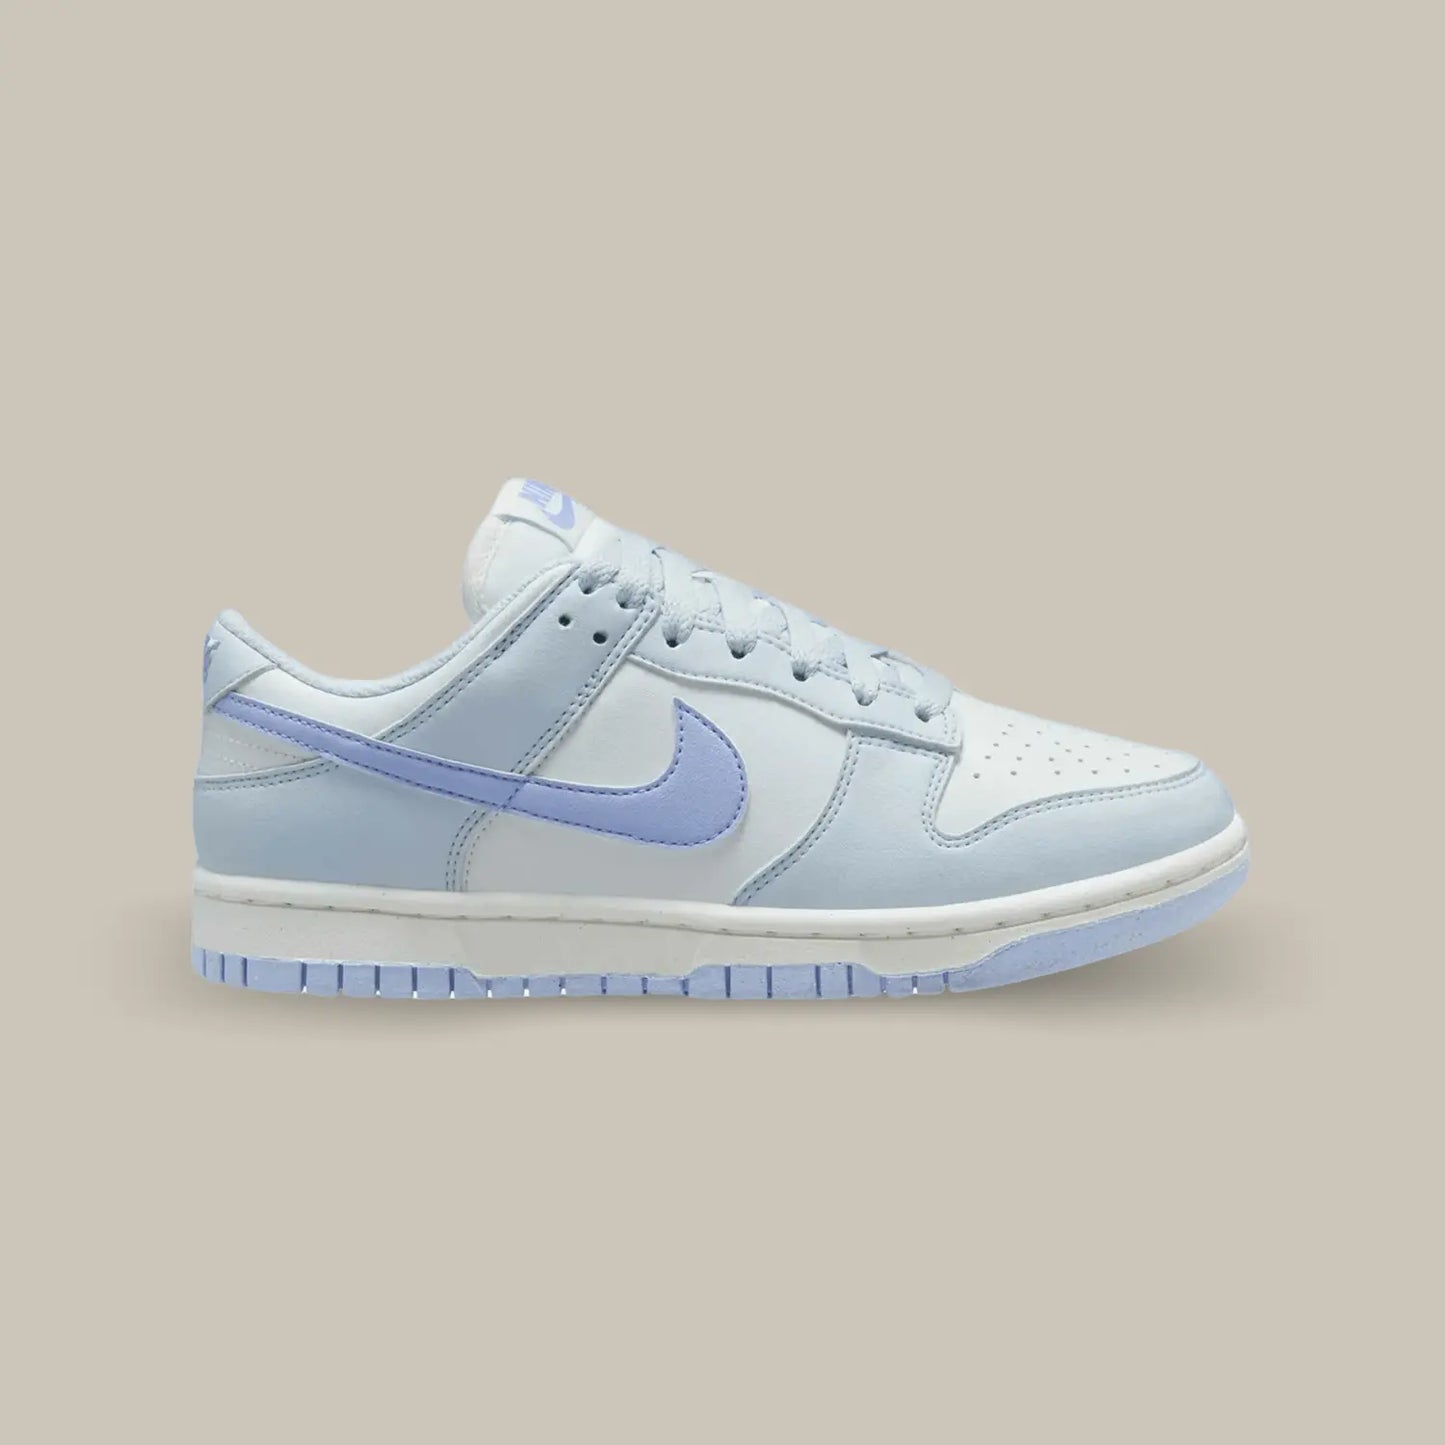 La Nike Dunk Low Next Nature Blue Tint de coté avec sa couleur blanc et bleu clair.